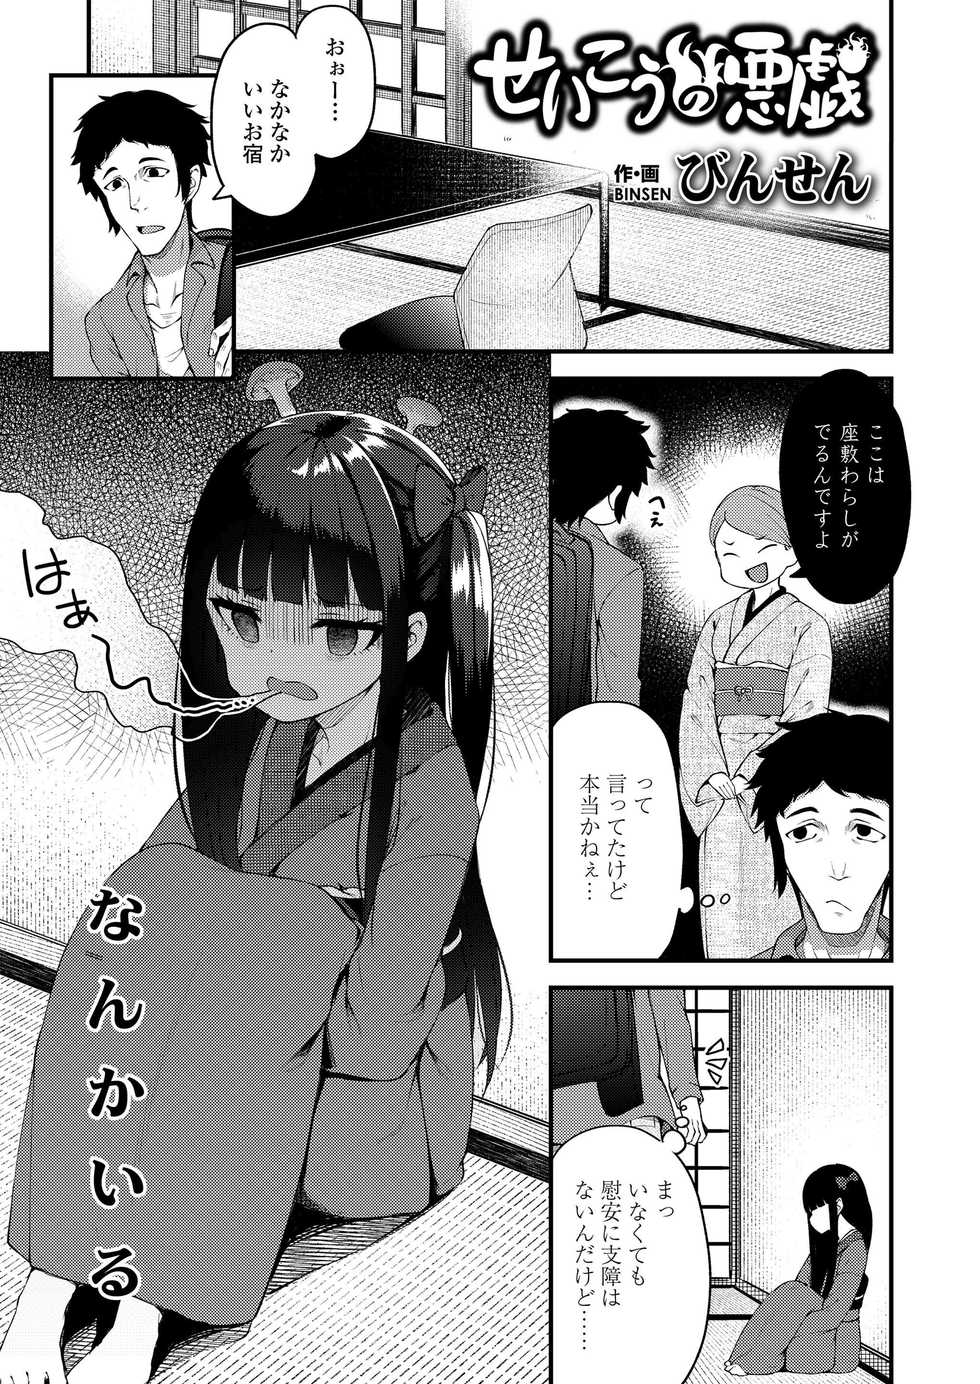 [Anthology] Towako Oboro Emaki San - Page 3